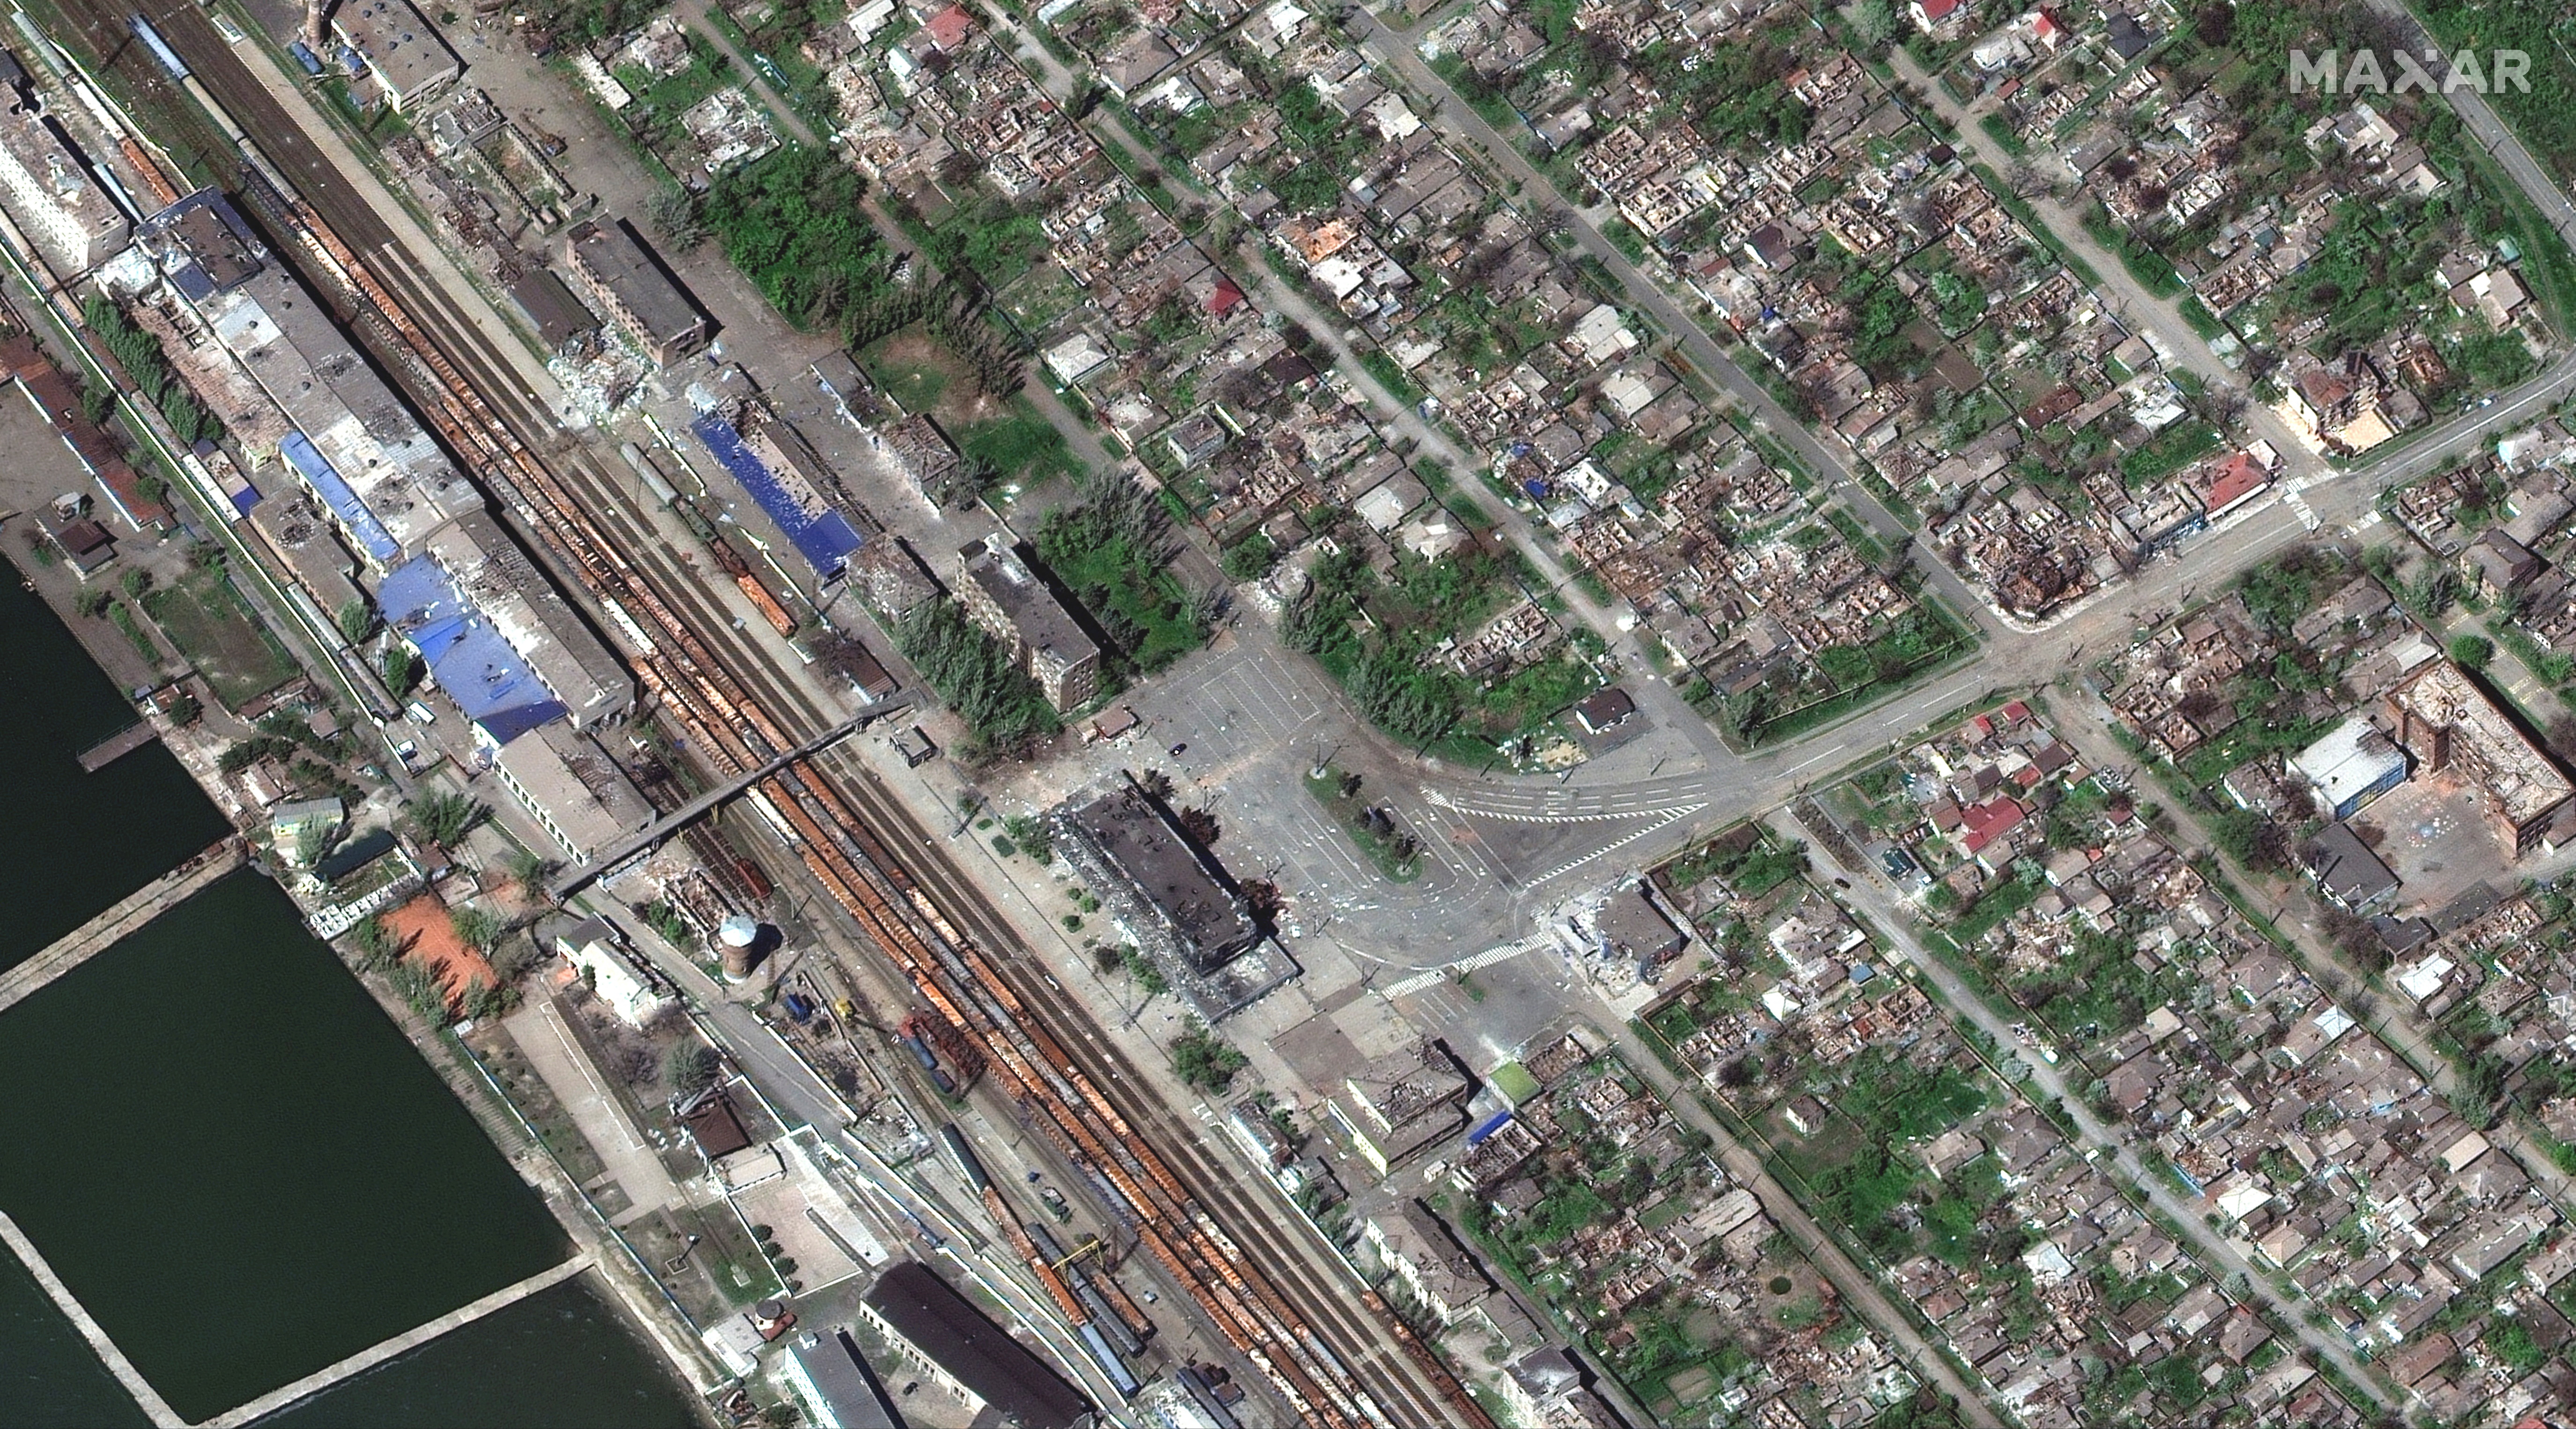 Una imagen de satélite muestra la estación de tren de Mariupol y edificios destruidos el 29 de abril de 2022 (Maxar Technologies/REUTERS)